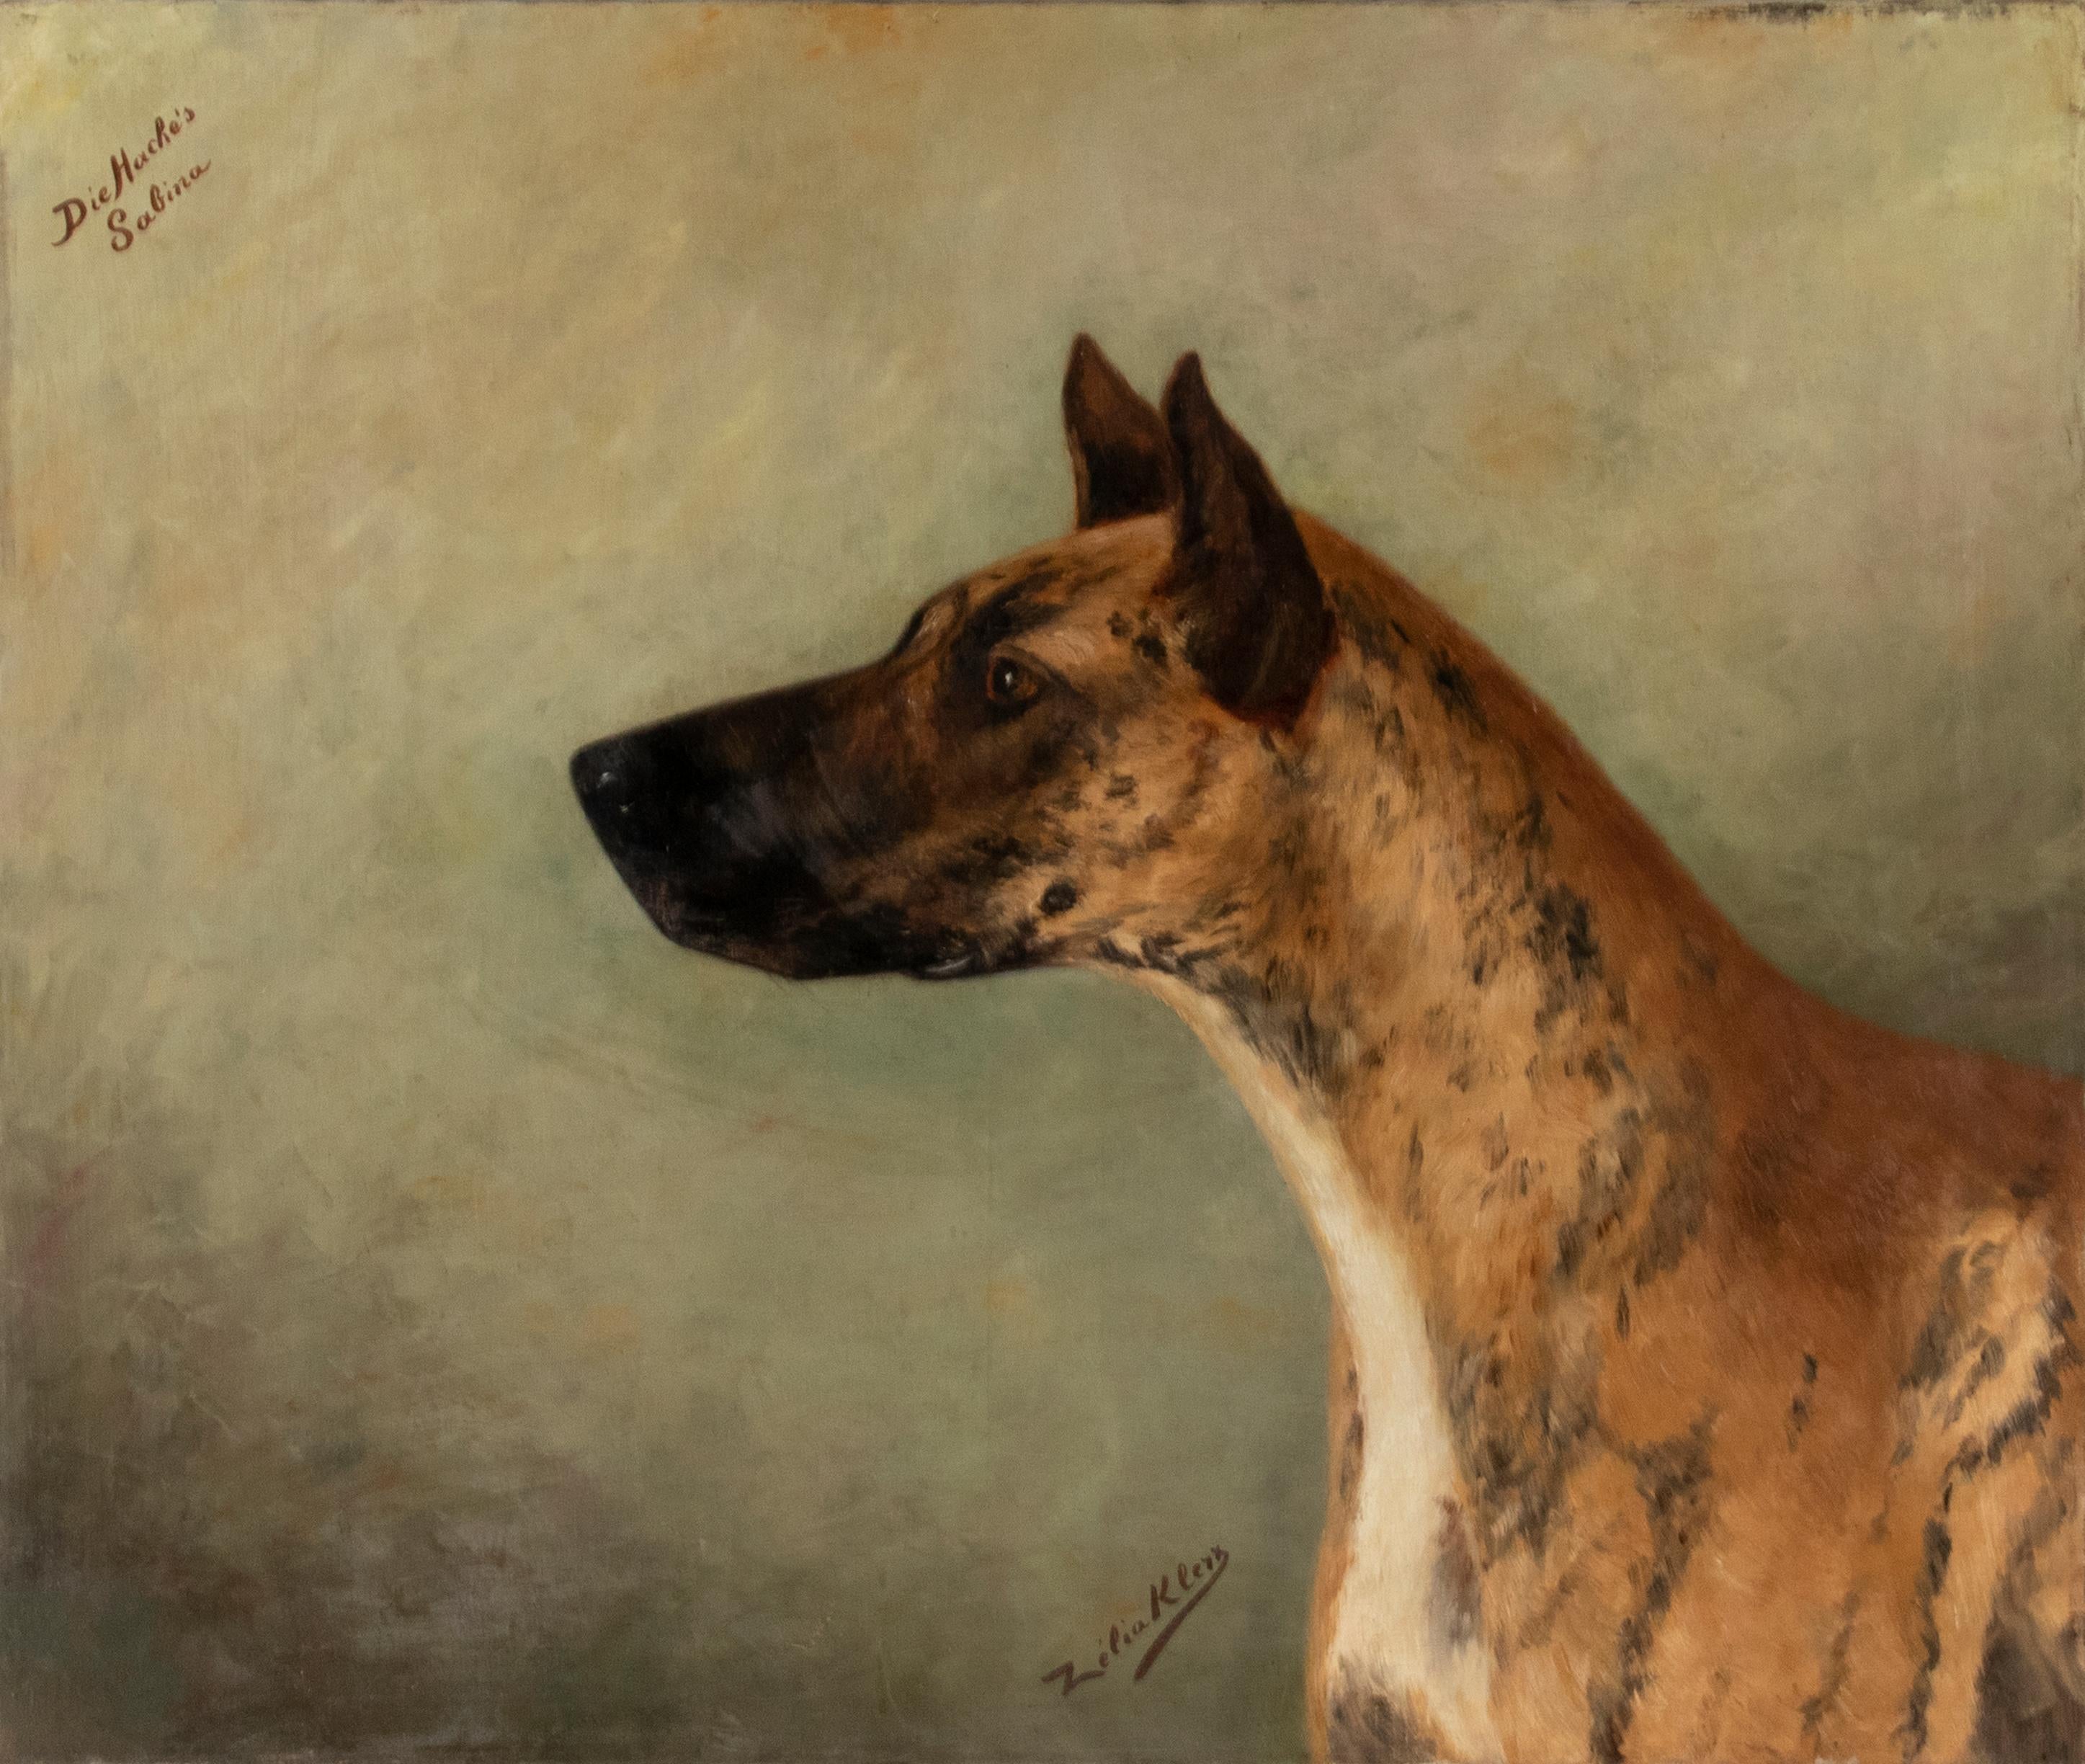 Magnifique tableau ancien, il s'agit d'un portrait de chien d'un Grand Danois. Le tableau est signé Zélia Klerx, c'était une artiste de la région belge des Ardennes, elle réalisait des tableaux commandés par des propriétaires de châteaux et de